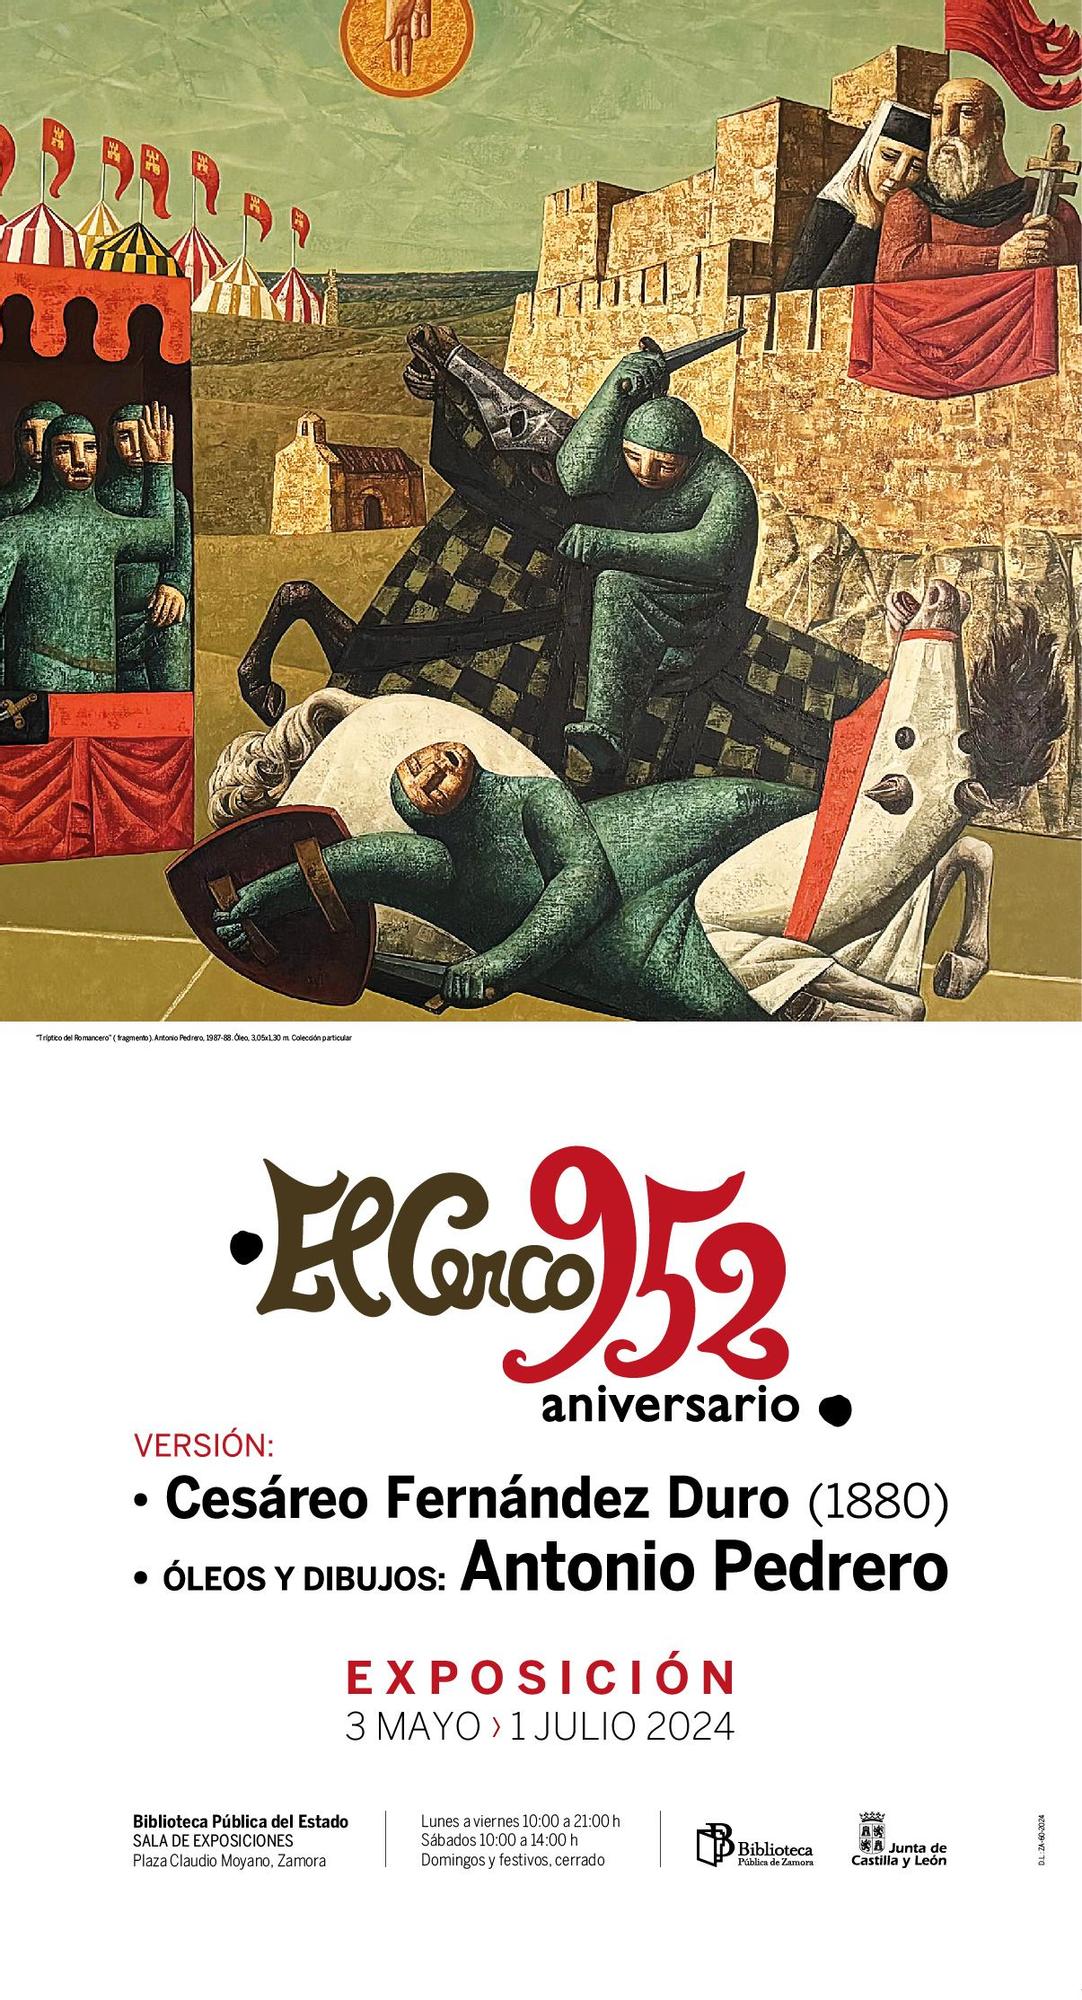 Cartel de la exposición &quot;El Cerco. 952 Aniversario&quot;